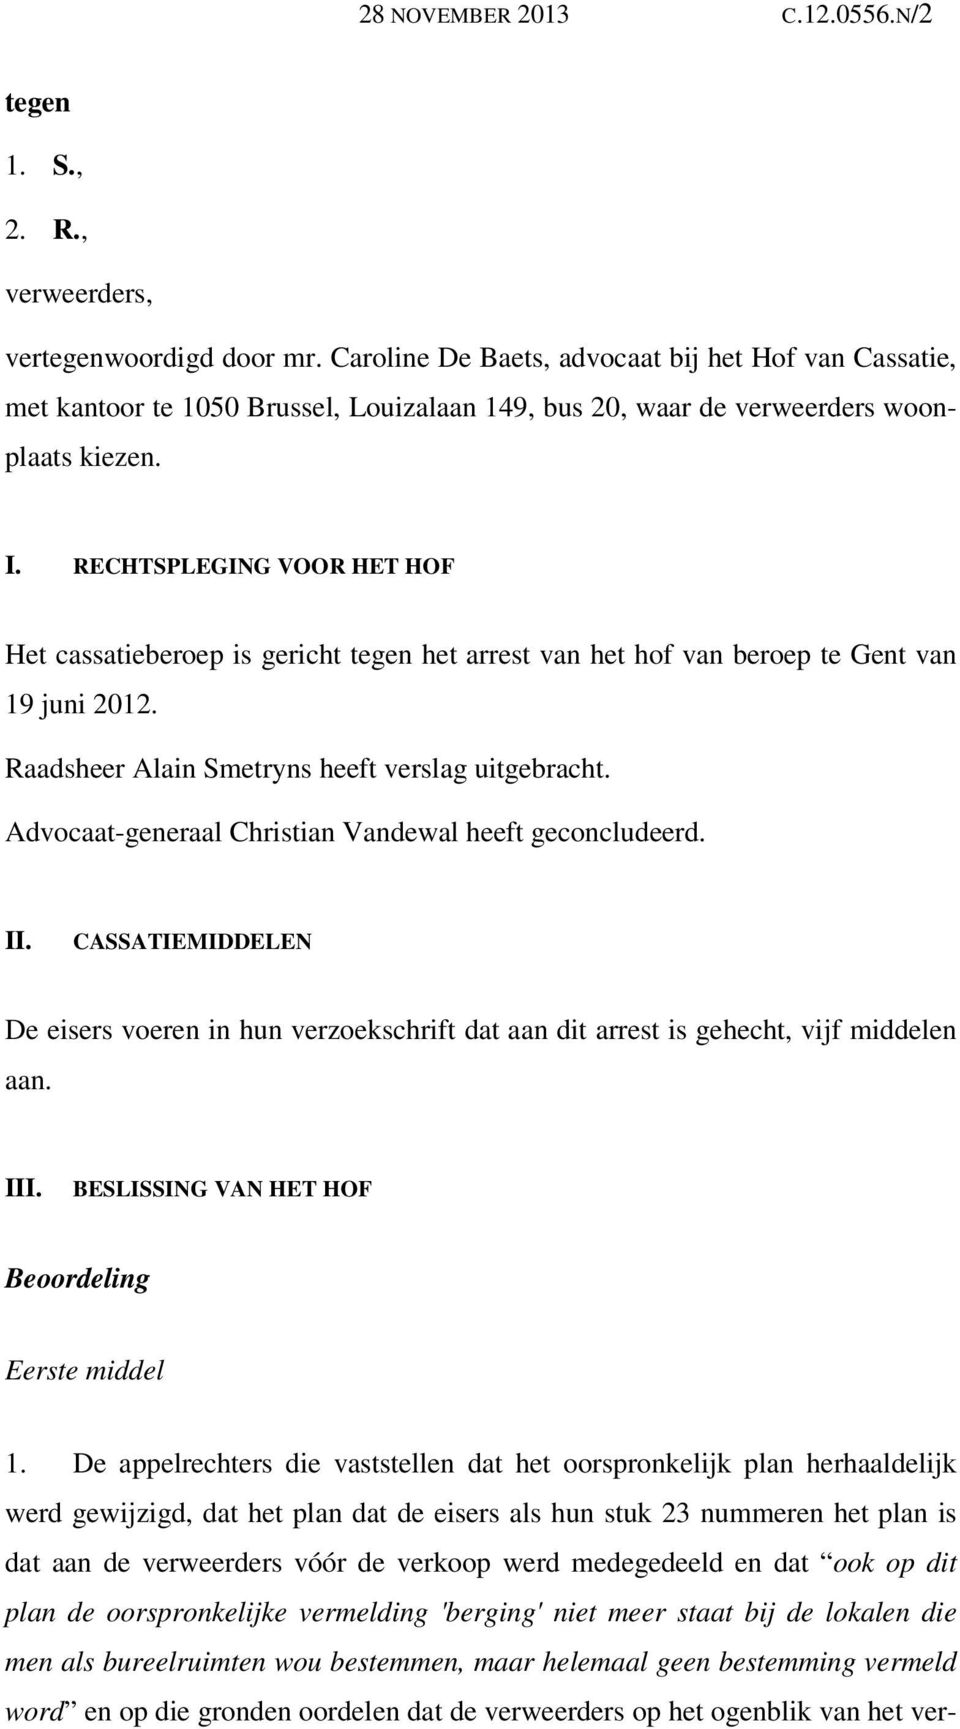 RECHTSPLEGING VOOR HET HOF Het cassatieberoep is gericht tegen het arrest van het hof van beroep te Gent van 19 juni 2012. Raadsheer Alain Smetryns heeft verslag uitgebracht.